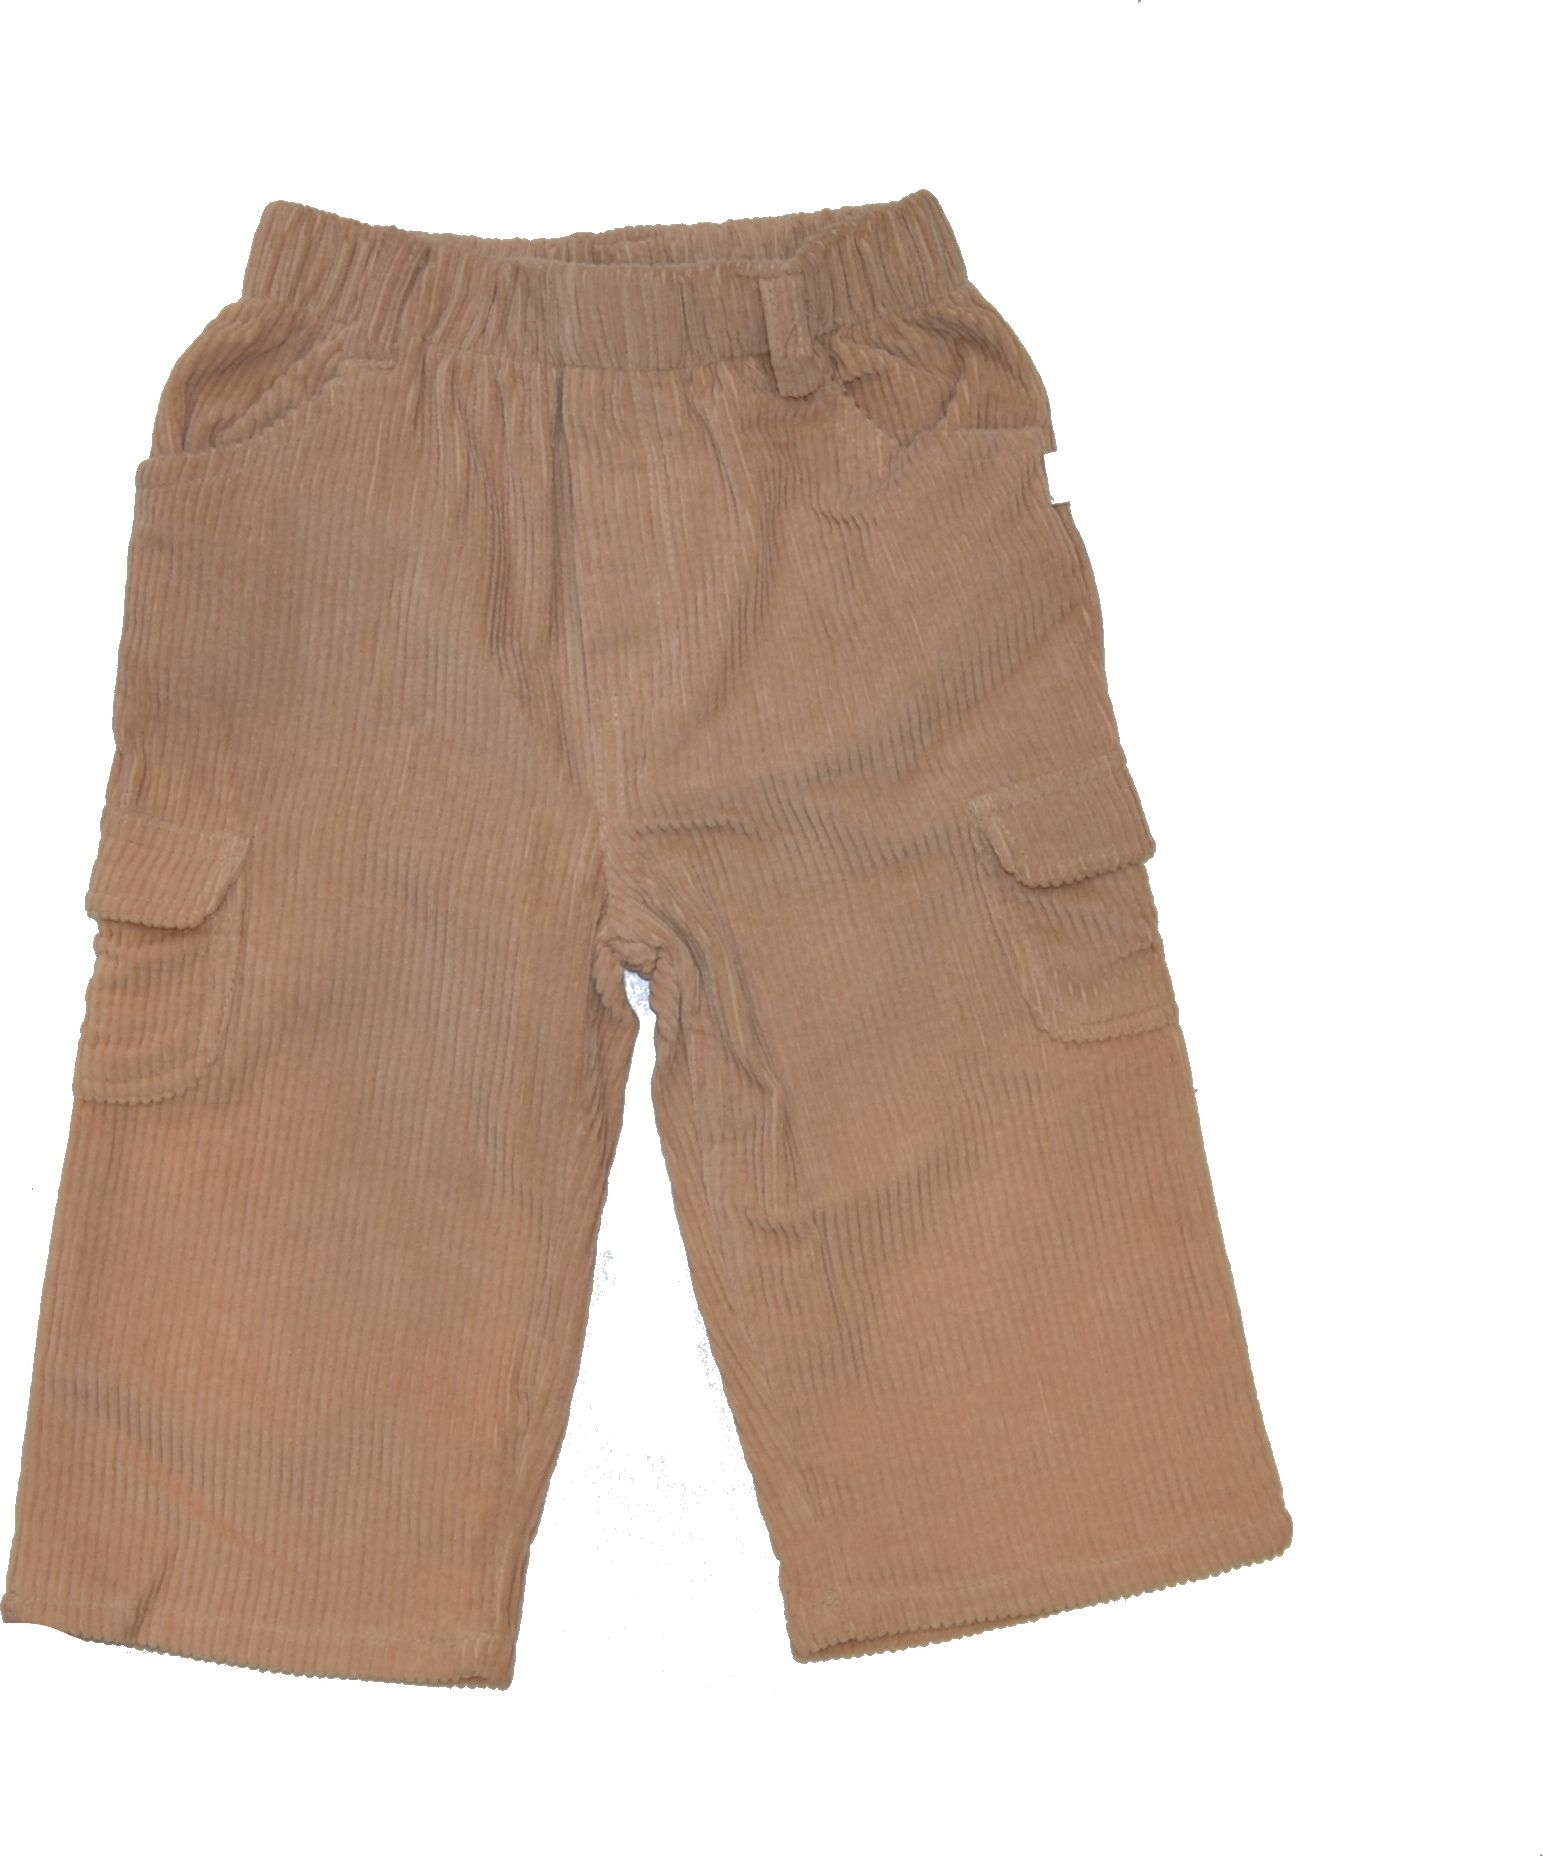 Dětské kalhoty, Benniny, vel.18 měsíců Výprodej - obrázek 1